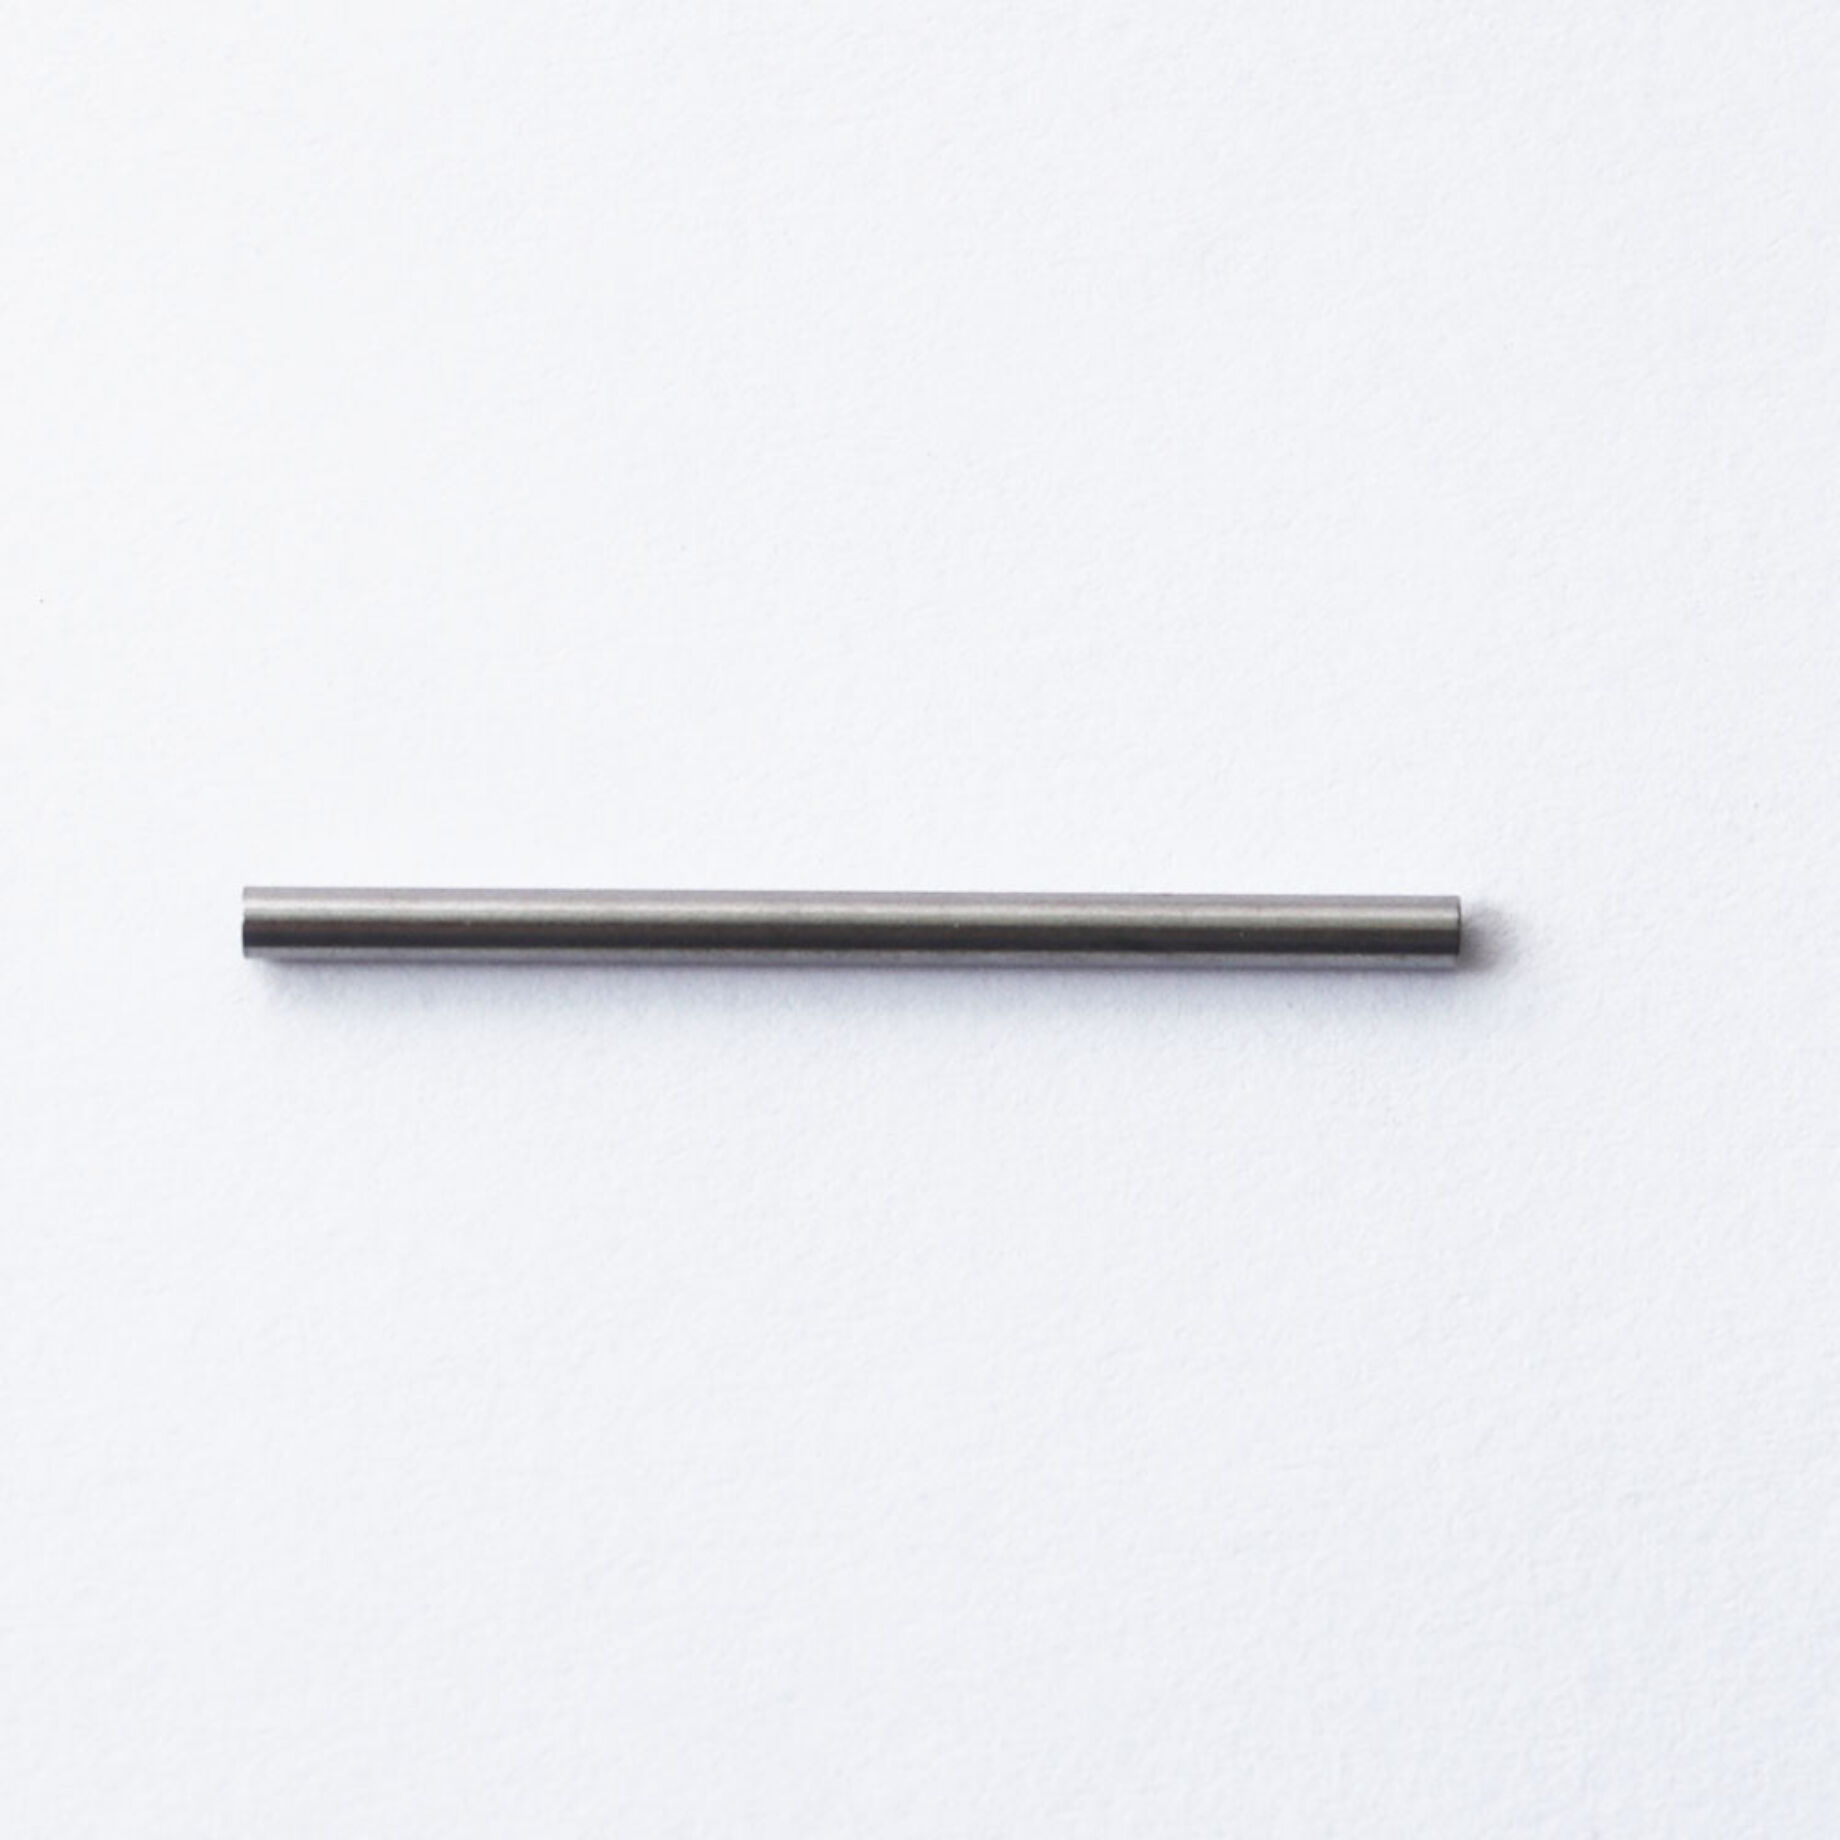 Cső alakú, egyenes, nemesacél köztes, 25 mm (1 db)